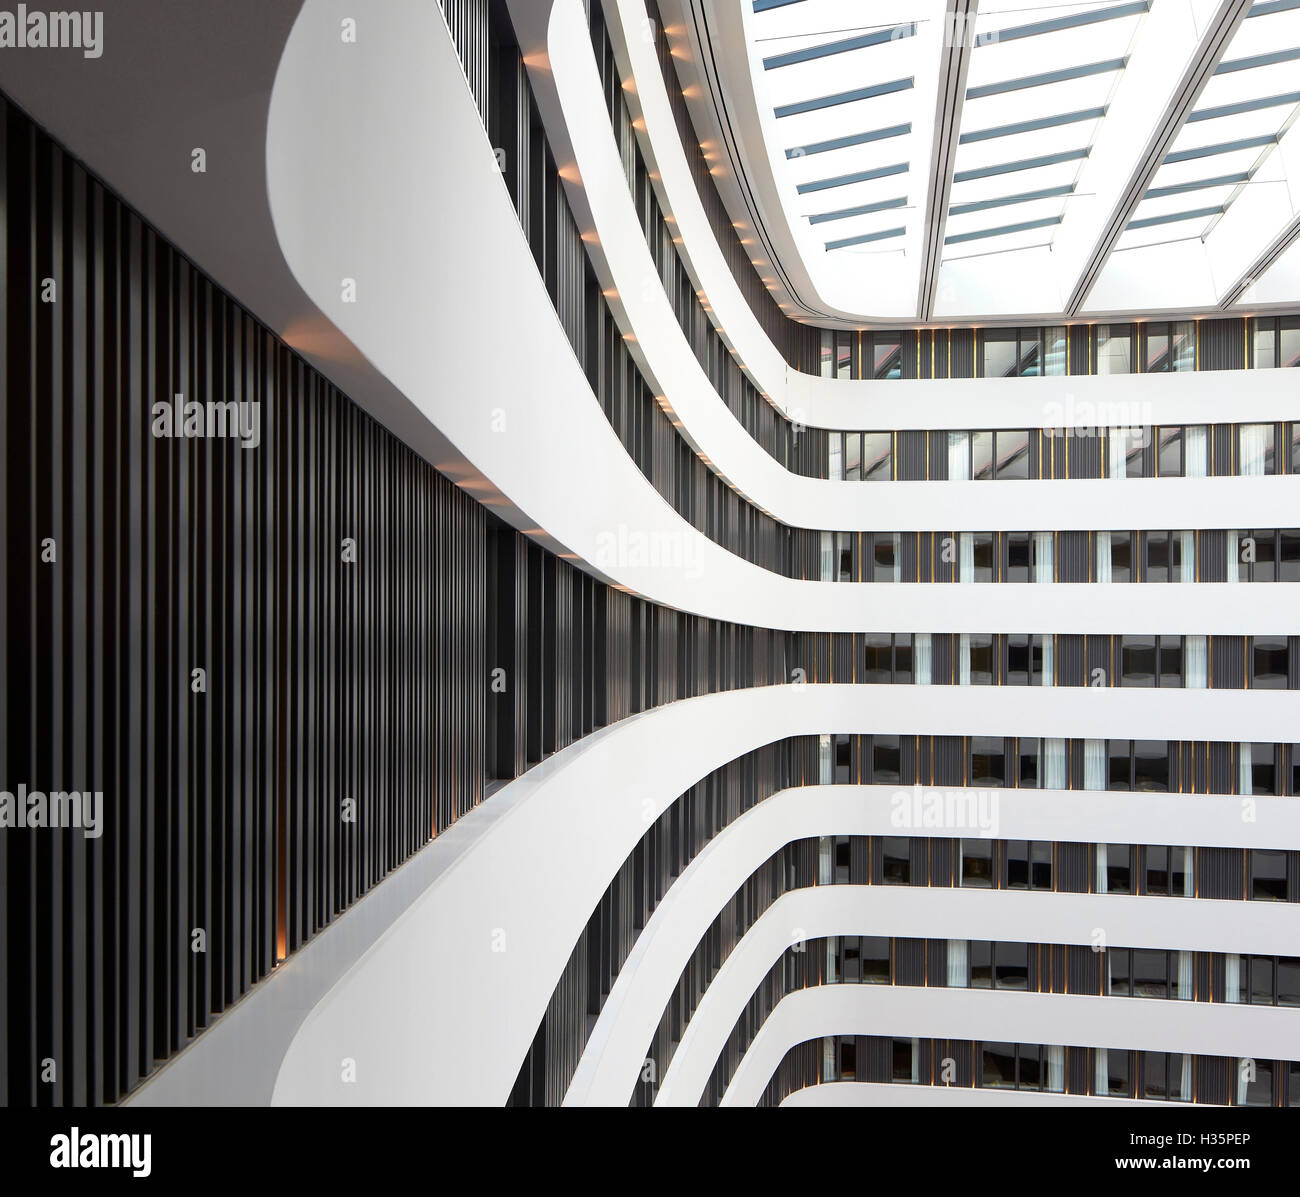 Point de vue graphique des balustrades blanches. Hilton Amsterdam Airport Schiphol, Amsterdam, Pays-Bas. Architecte : Architectes Mecanoo, 2015. Banque D'Images